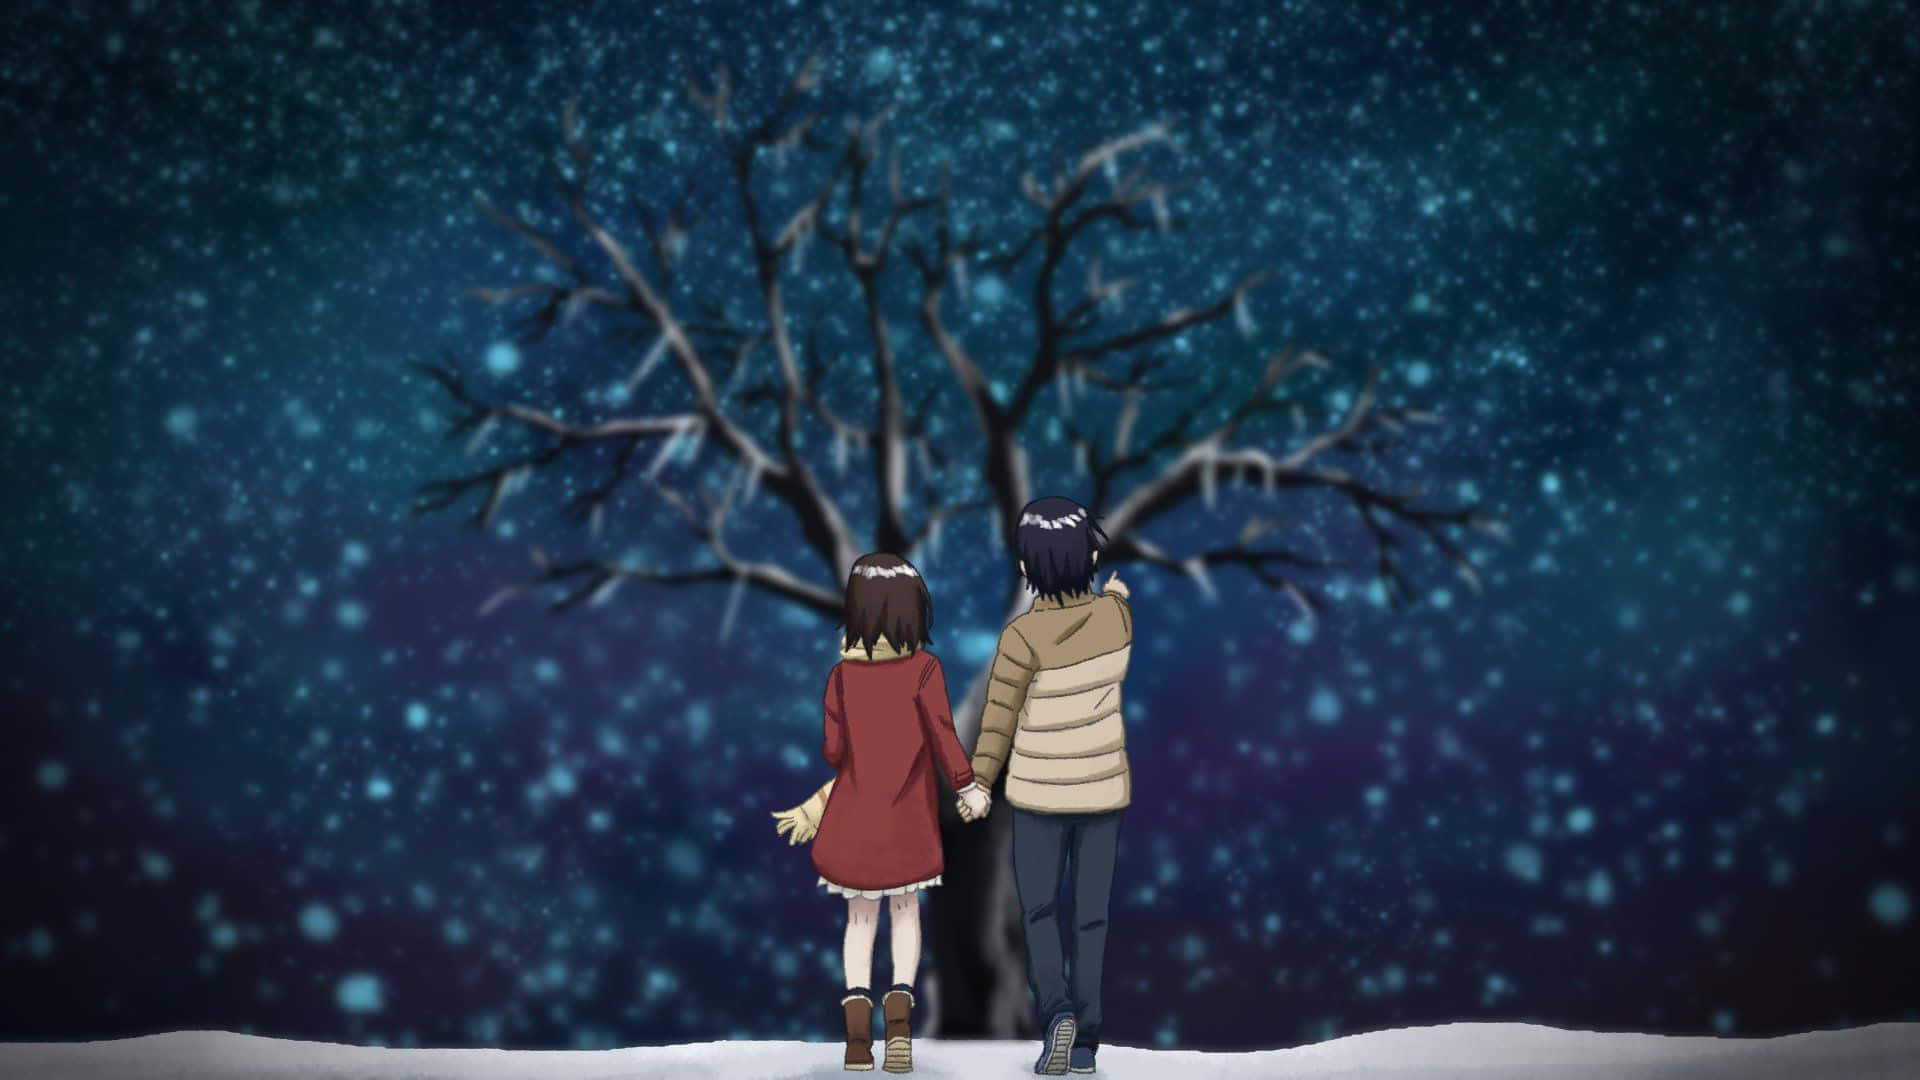 Erased Anime - Enchanting Frozen Christmas Tree Scene Wallpaper